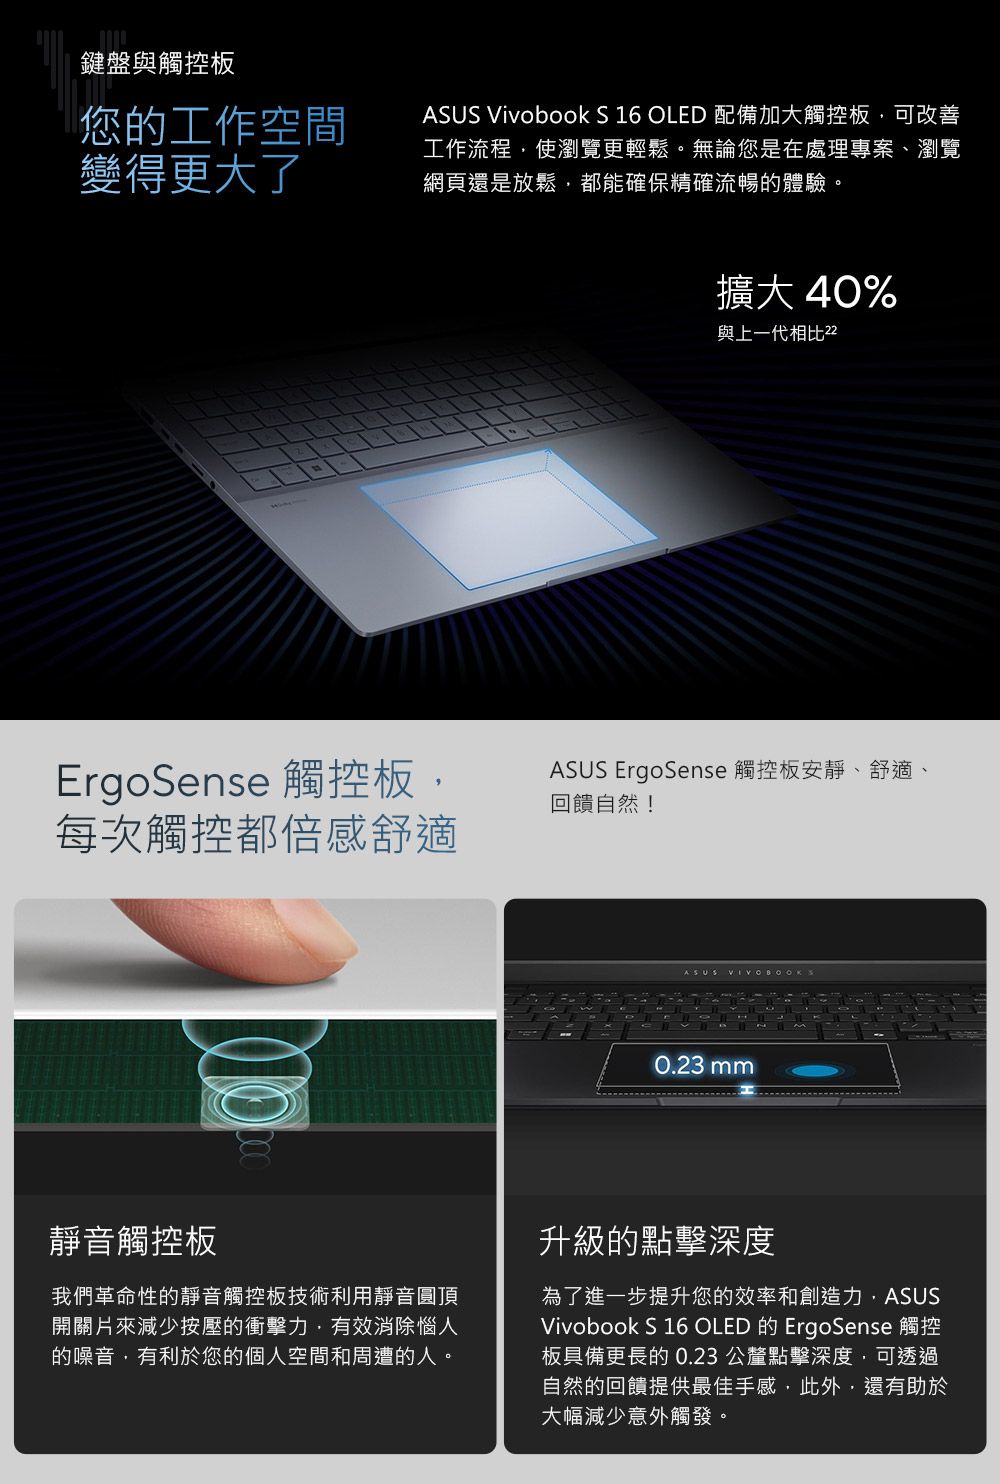 鍵盤與觸控板您的工作空間變得更大了ASUS Vivobook S 16 OLED 配備加大觸控板可改善工作流程,使瀏覽更輕鬆。無論您是在處理專案、瀏覽網頁還是放鬆,都能確保精確流暢的體驗。擴大40%與上一代相比2ErgoSense 觸控板,ASUS ErgoSense 觸控板安靜、舒適、回饋自然!每次觸控都倍感舒適ASUS 0.23mm靜音觸控板我們革命性的靜音觸控板技術利用靜音圓頂開關片來減少按壓的衝擊力,有效消除惱人的噪音,有利於您的個人空間和周遭的人。升級的點擊深度為了進一步提升您的效率和創造力,ASUSVivobook S 16 OLED ErgoSense板具備更長的0.23 公釐點擊深度,可透過自然的回饋提供最佳手感,此外,還有助於大幅減少意外觸發。